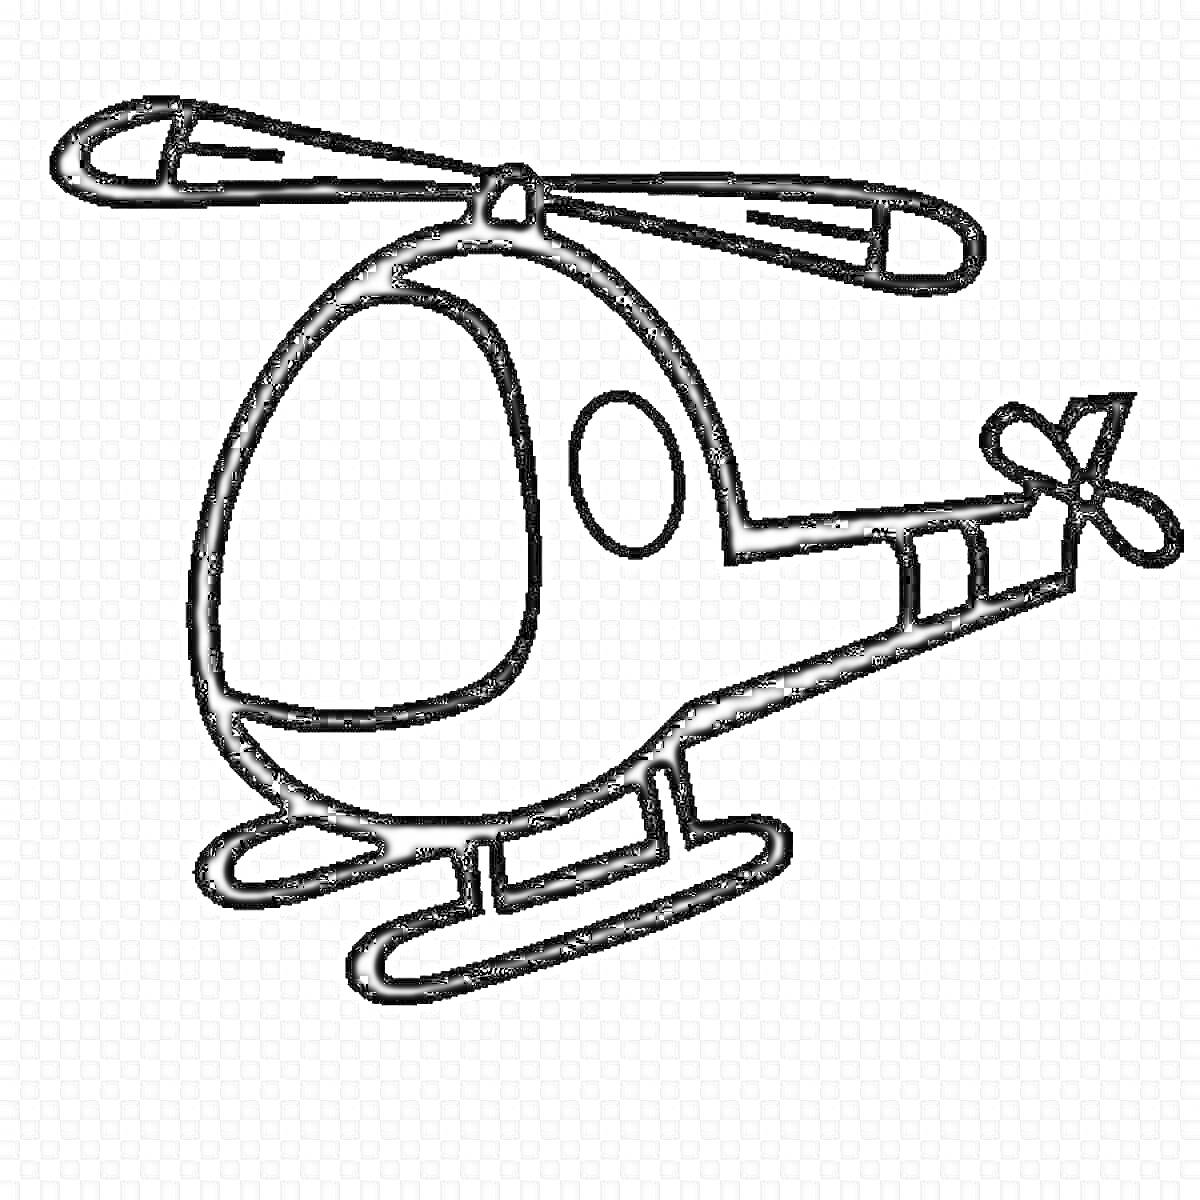 Раскраска Раскраска с изображением детского вертолета с двумя лопастями, хвостовым винтом и двумя посадочными полозьями.